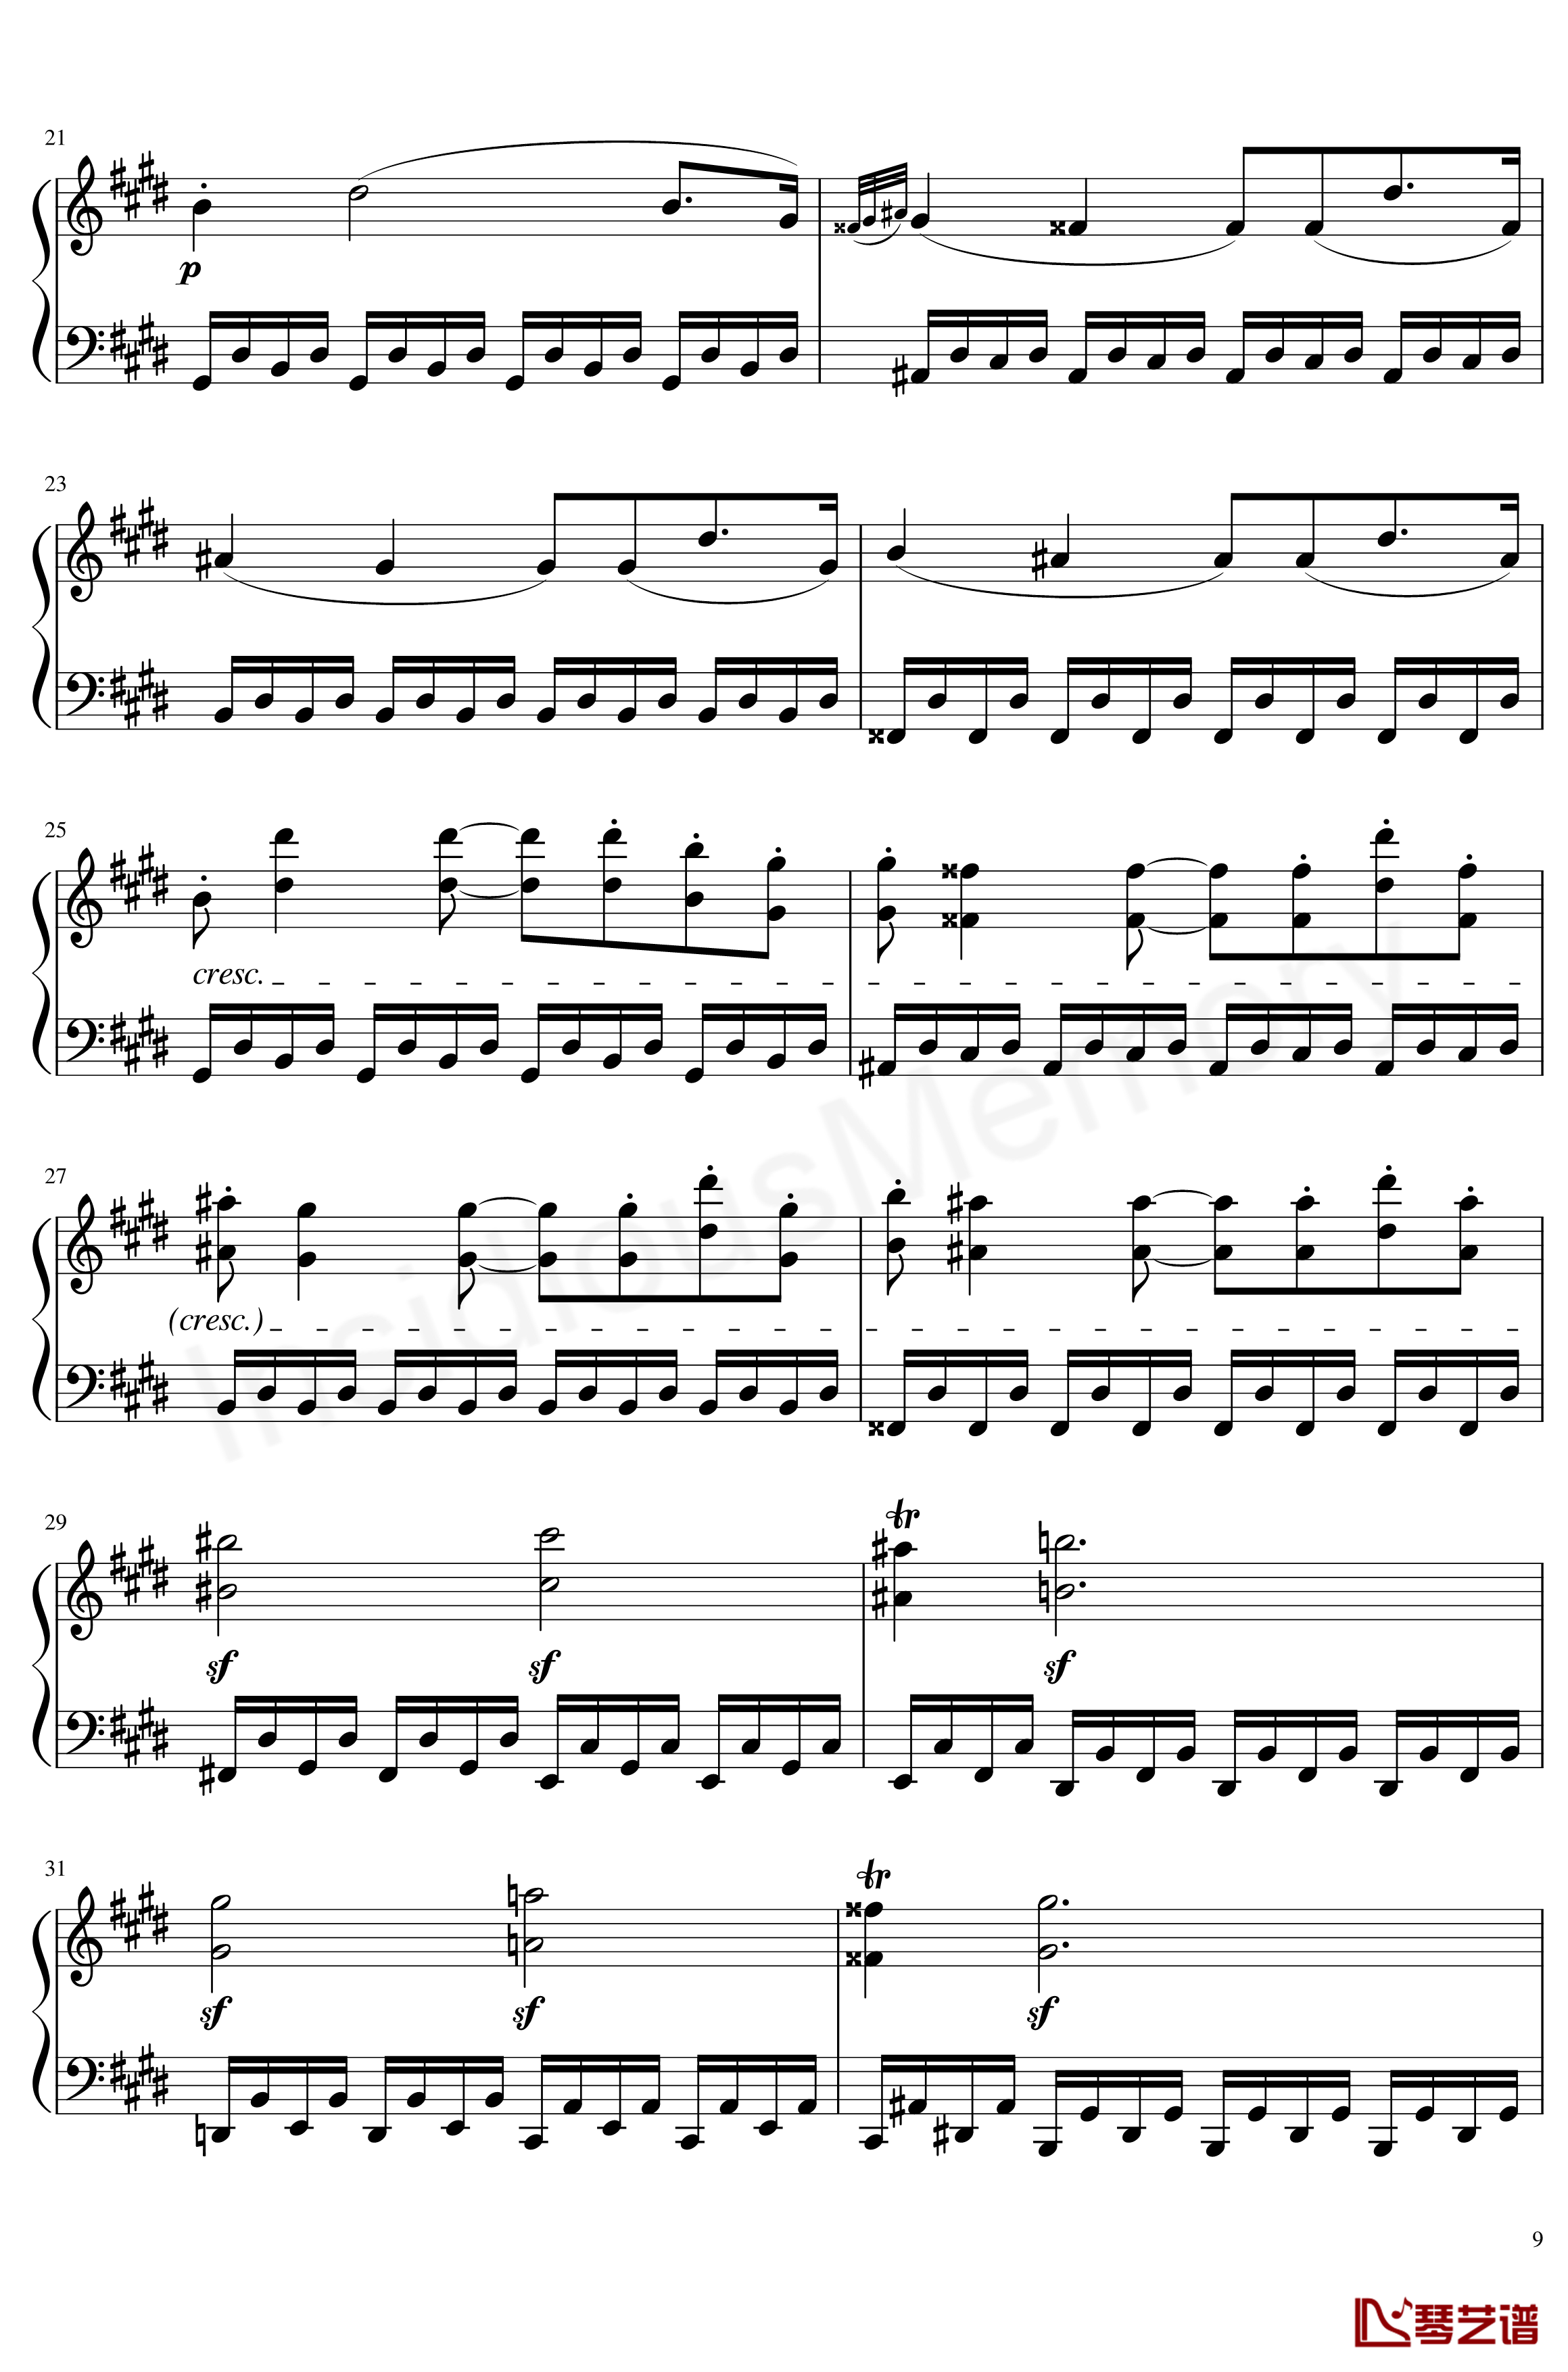 月光奏鸣曲钢琴谱-贝多芬-beethoven9